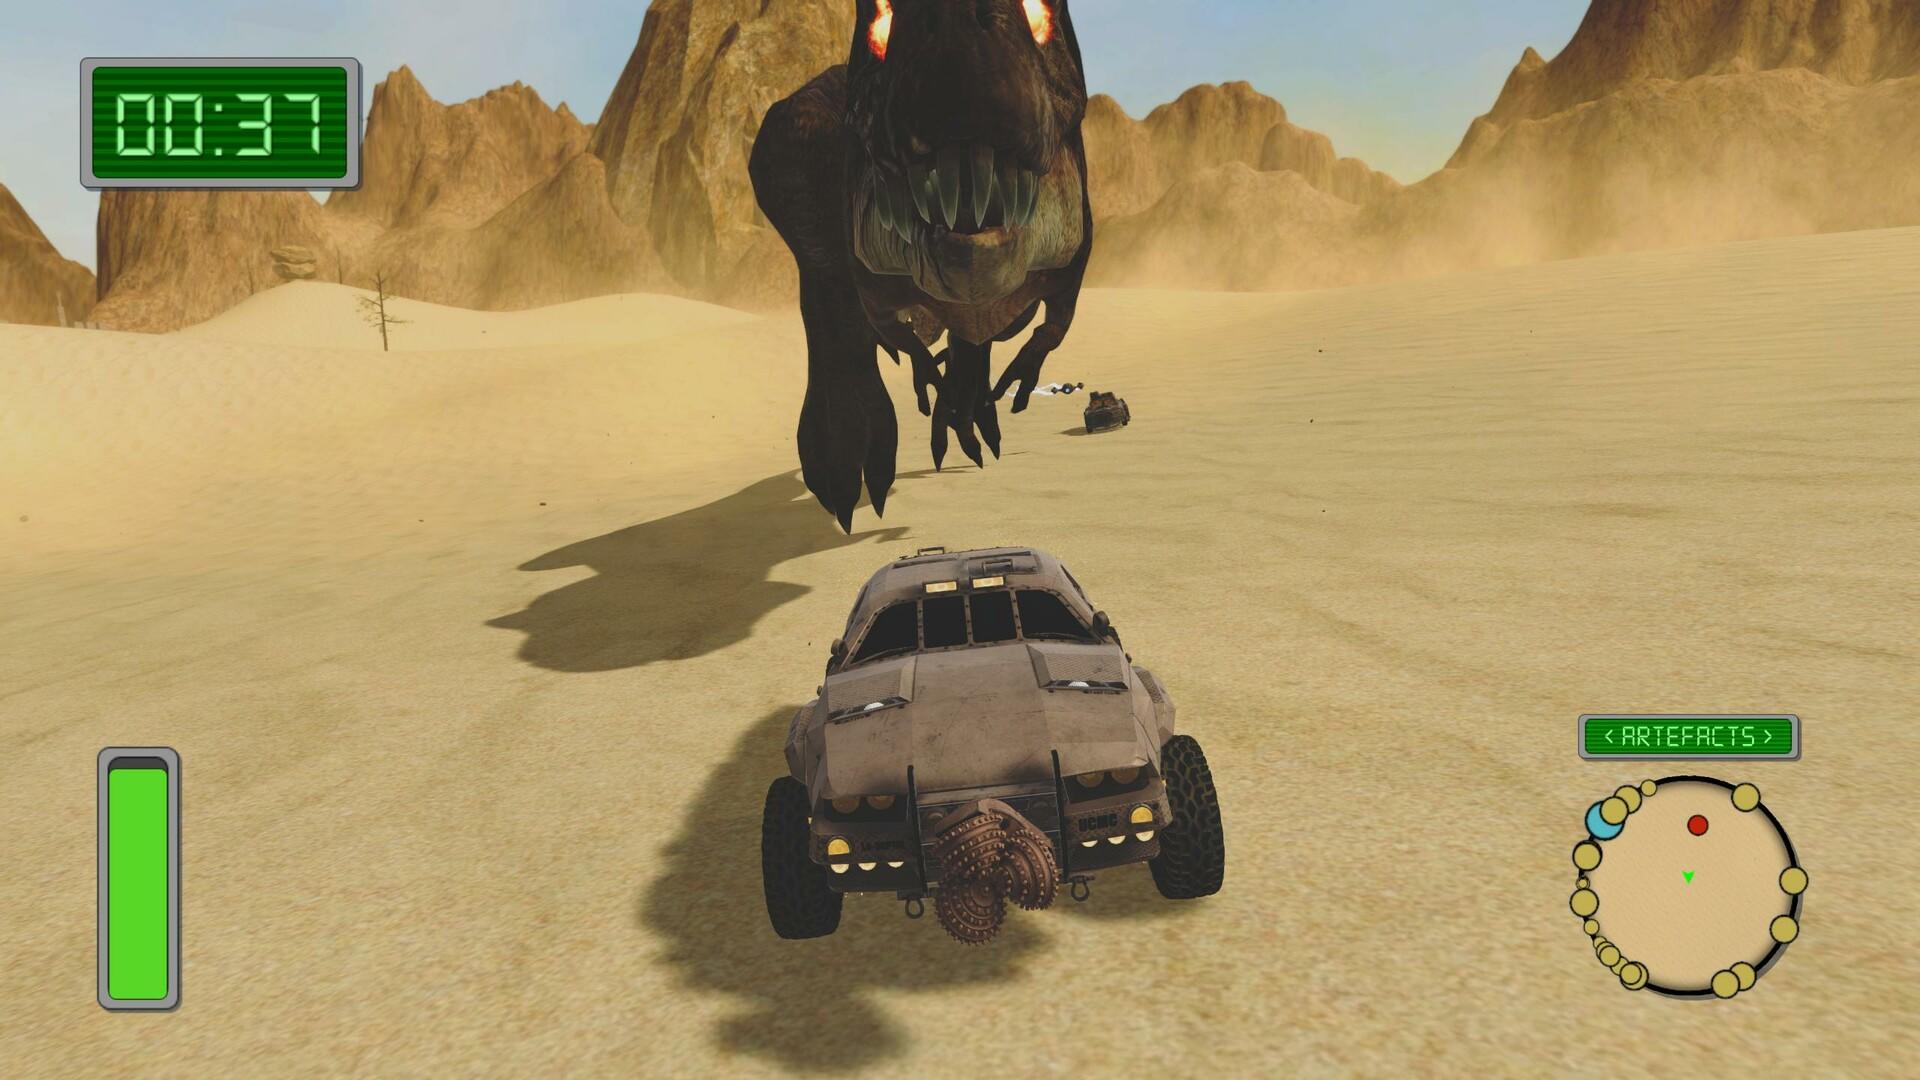 Dune of the Desert遊戲截圖